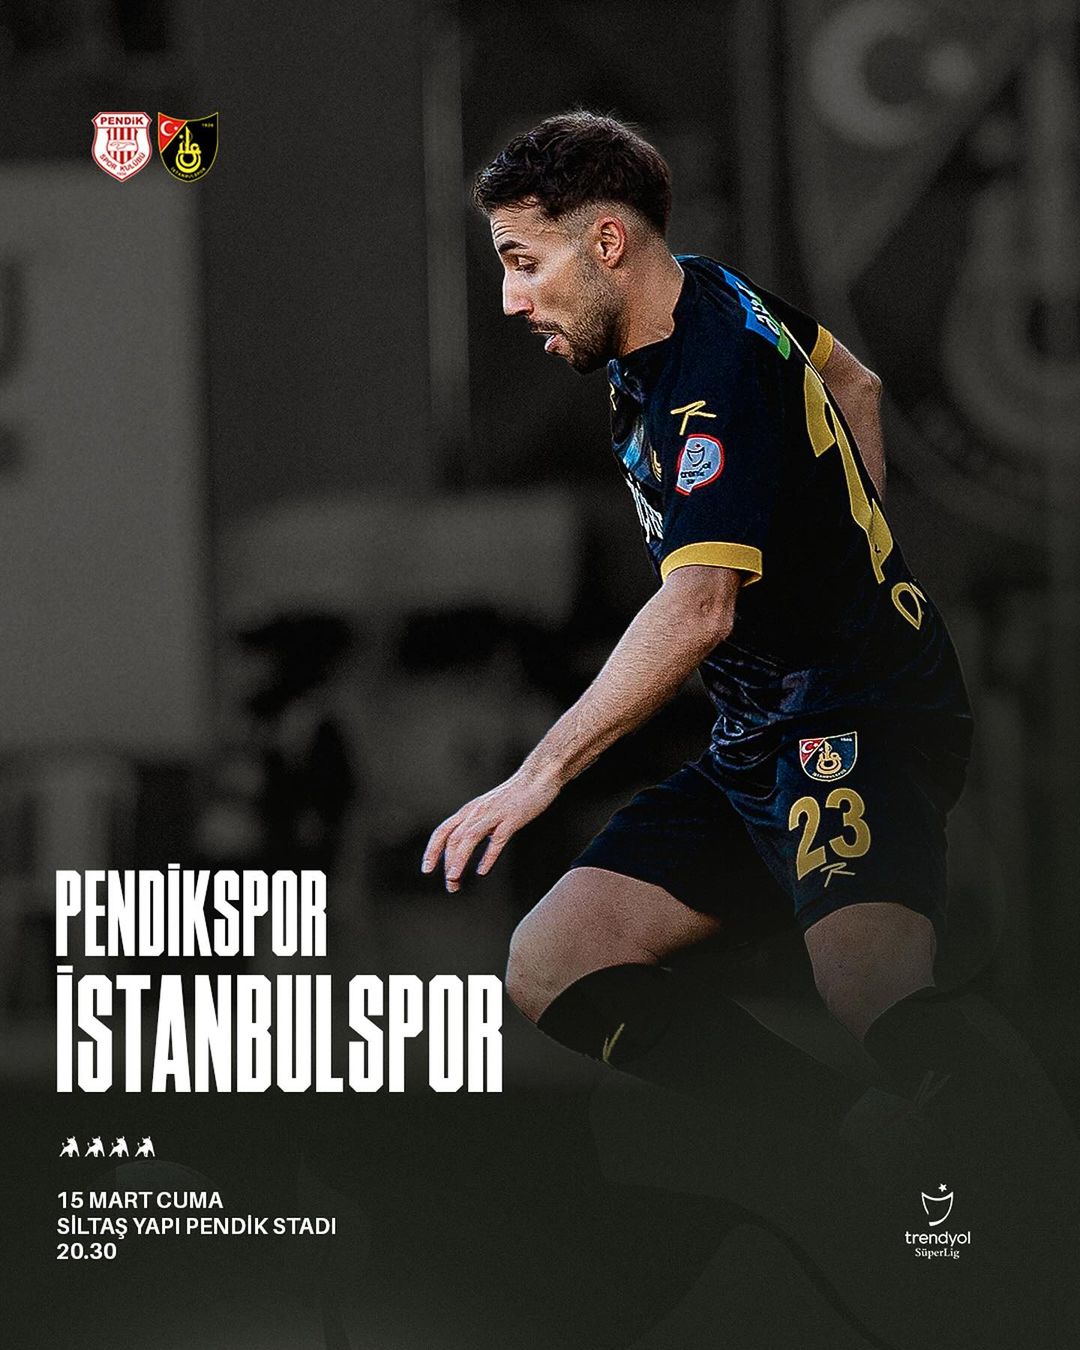 İstanbulspor, Pendikspor'a karşı önemli mücadele için sahaya çıkacak!